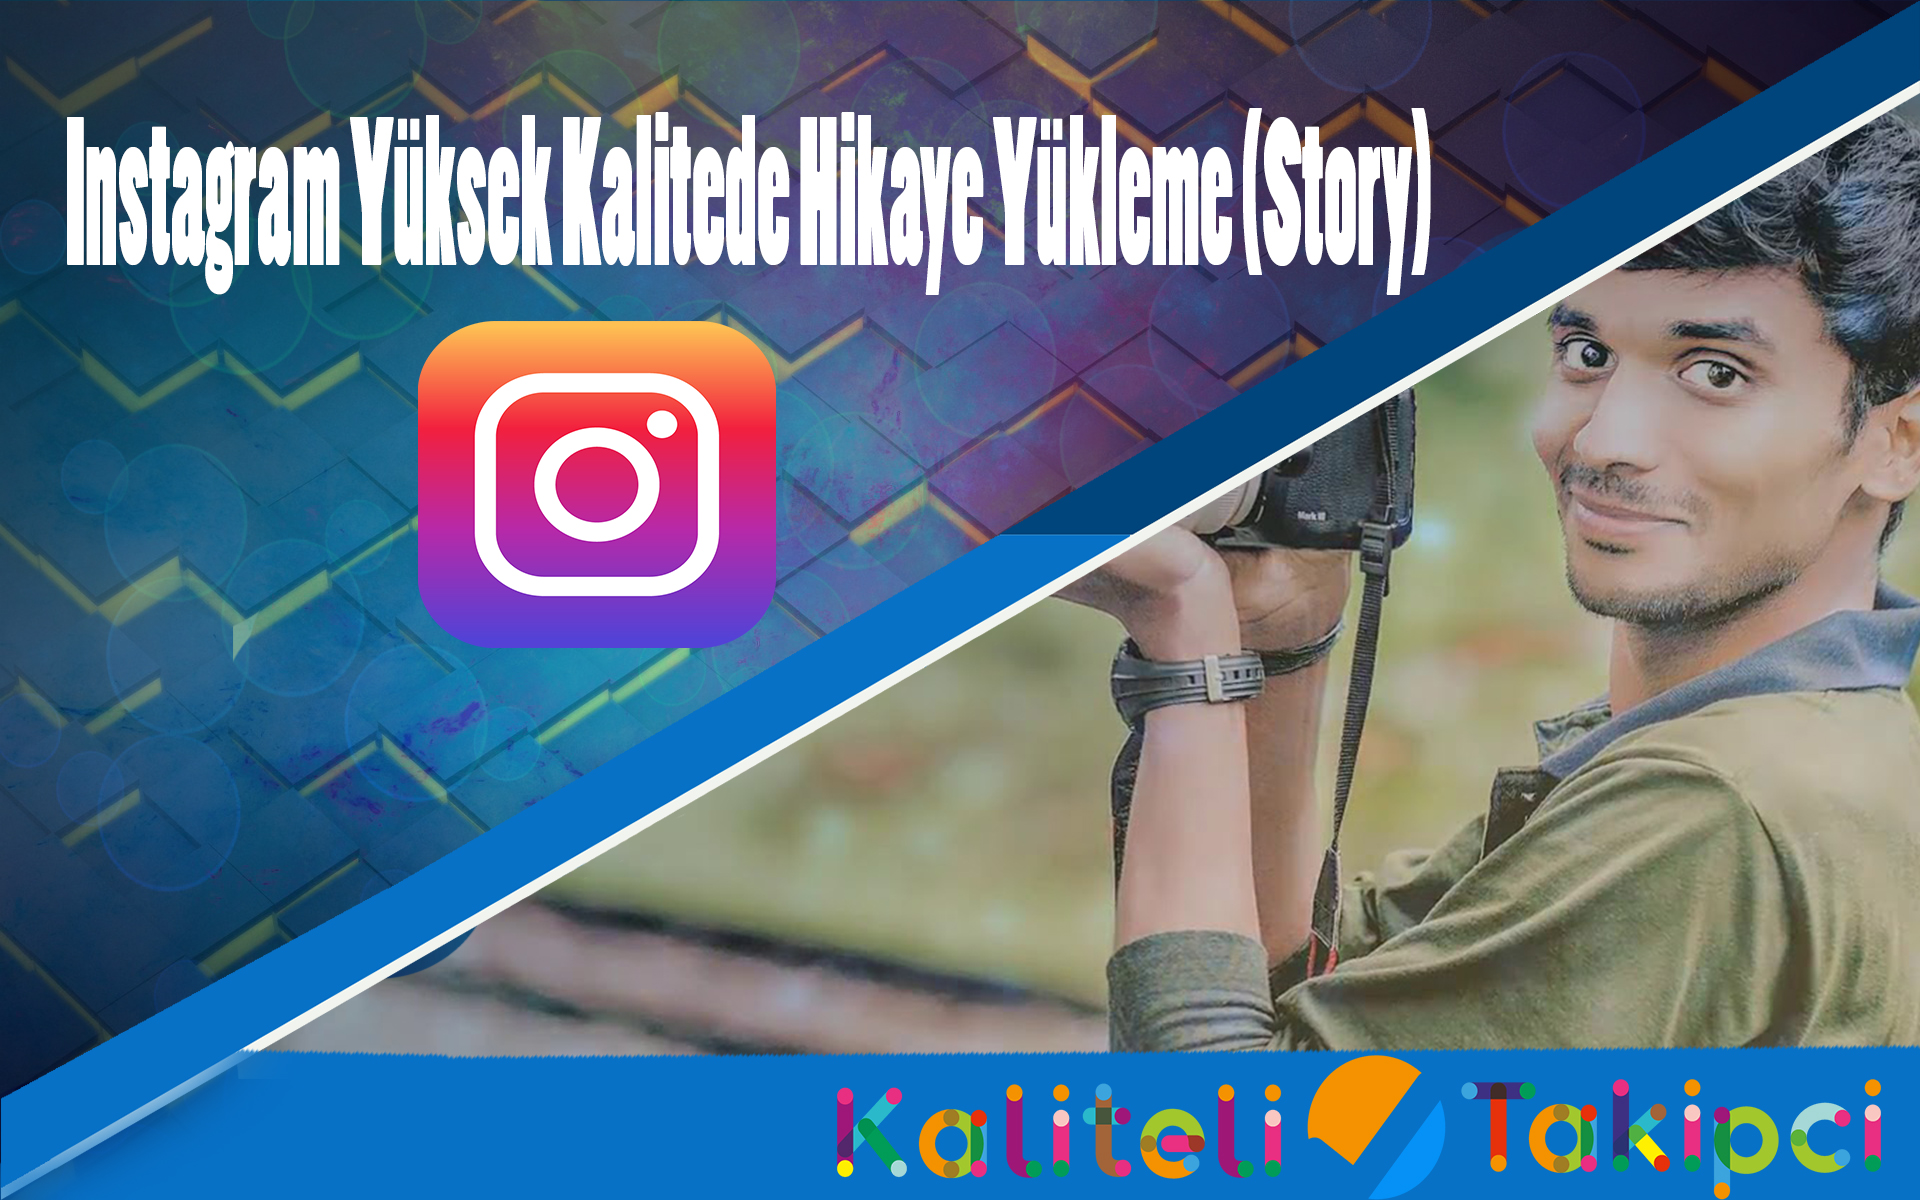  Instagram Yüksek Kalite Hikaye Yükleme (Story)